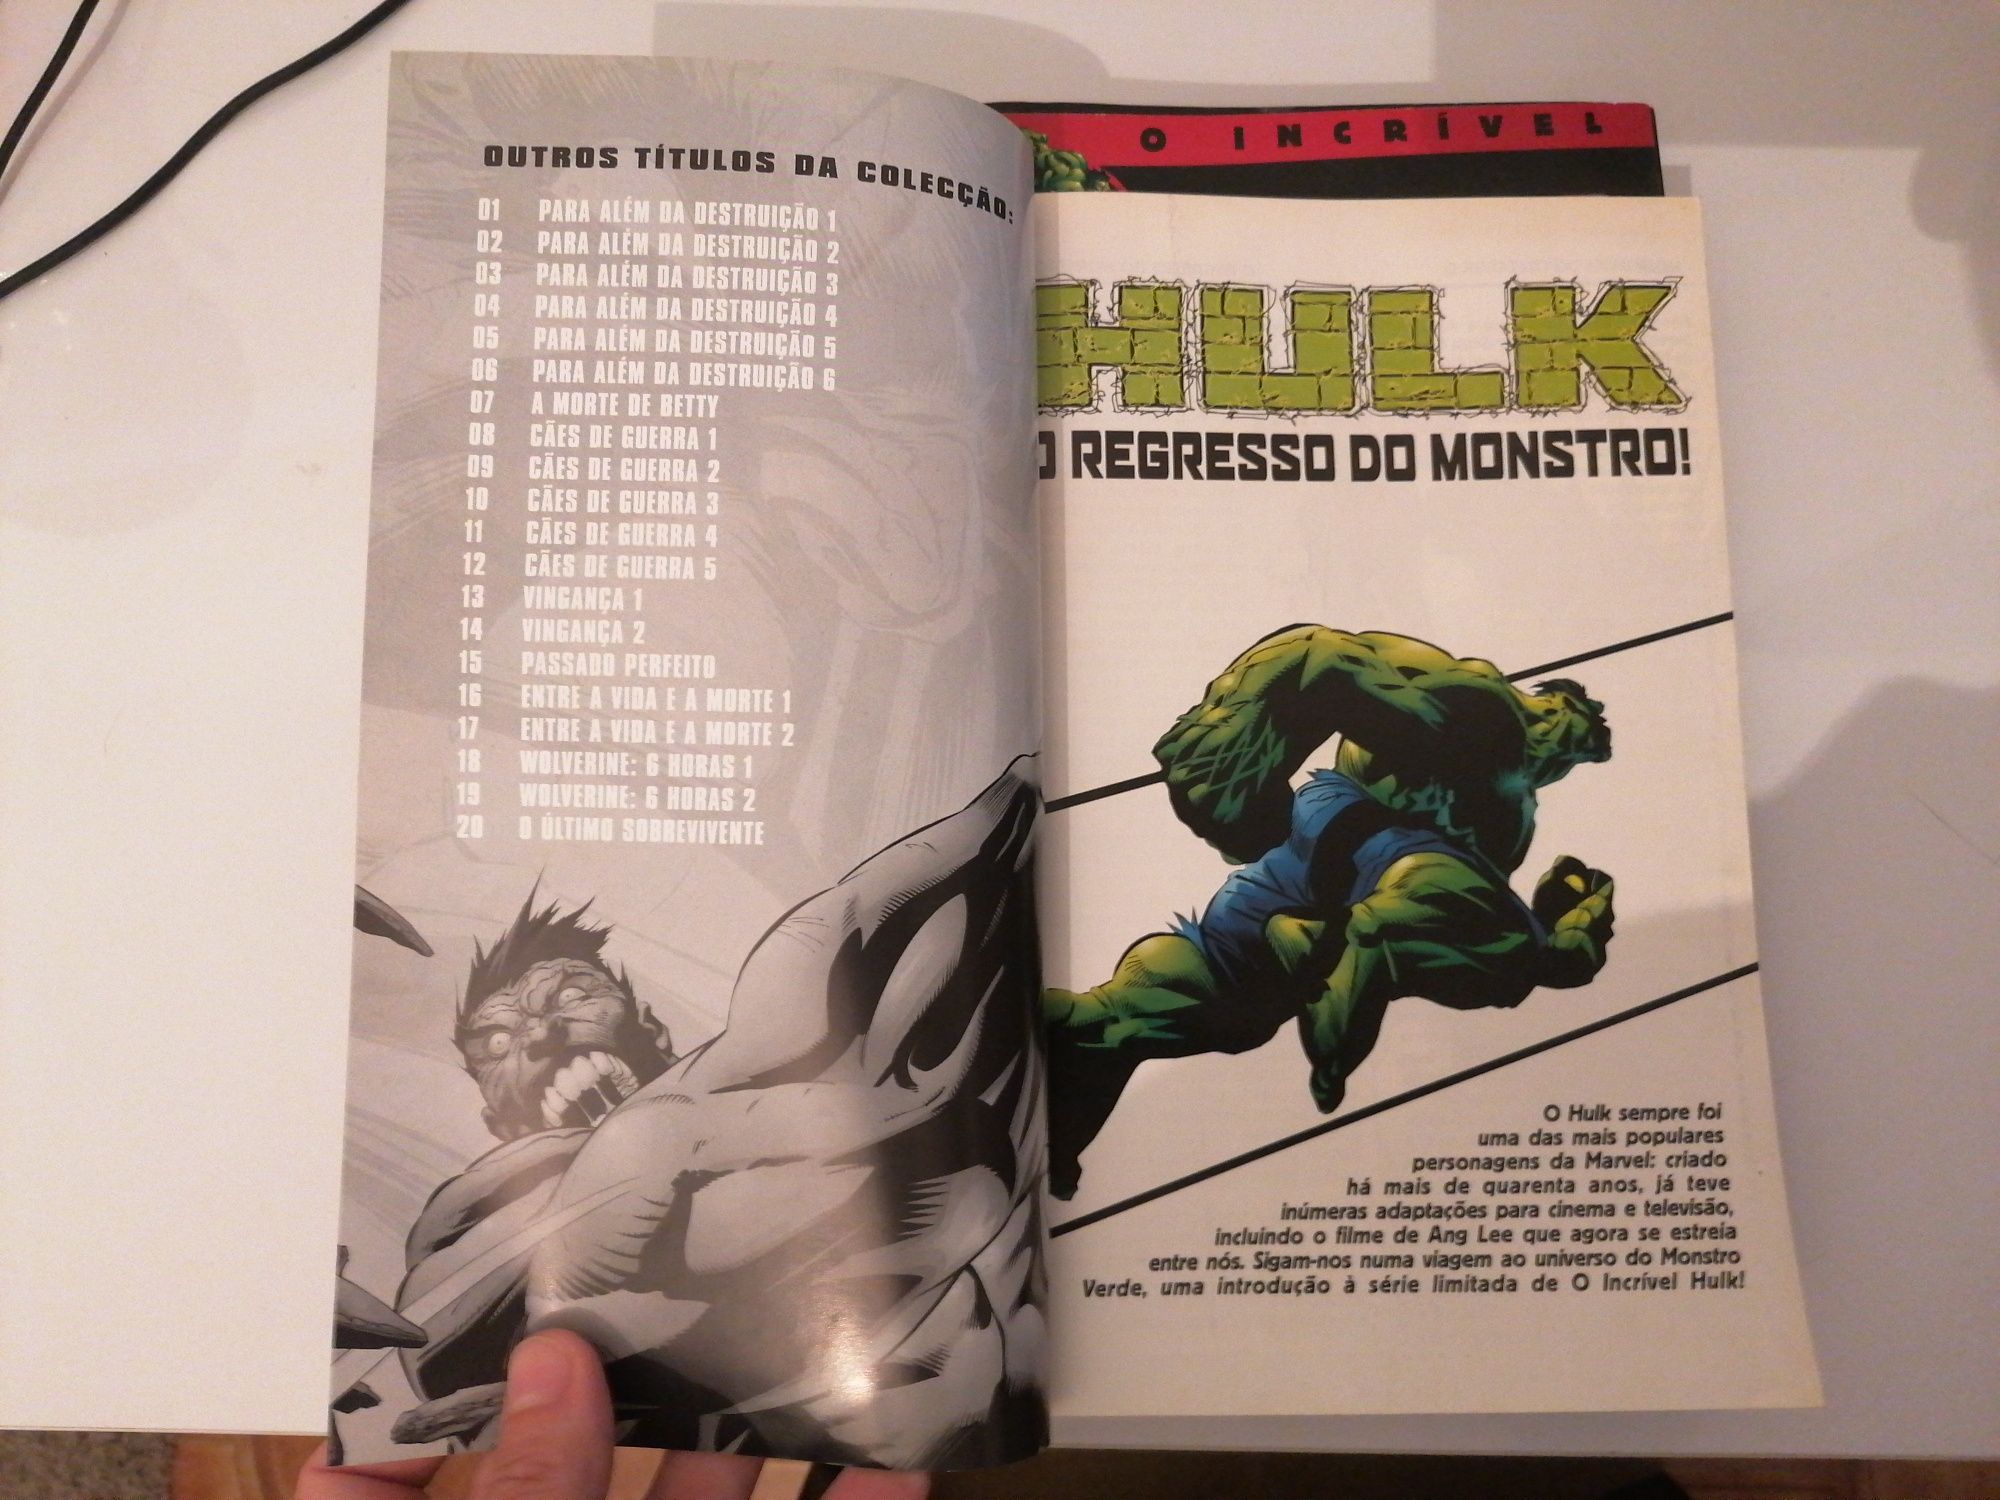 O Incrível Hulk coleção completa portuguesa